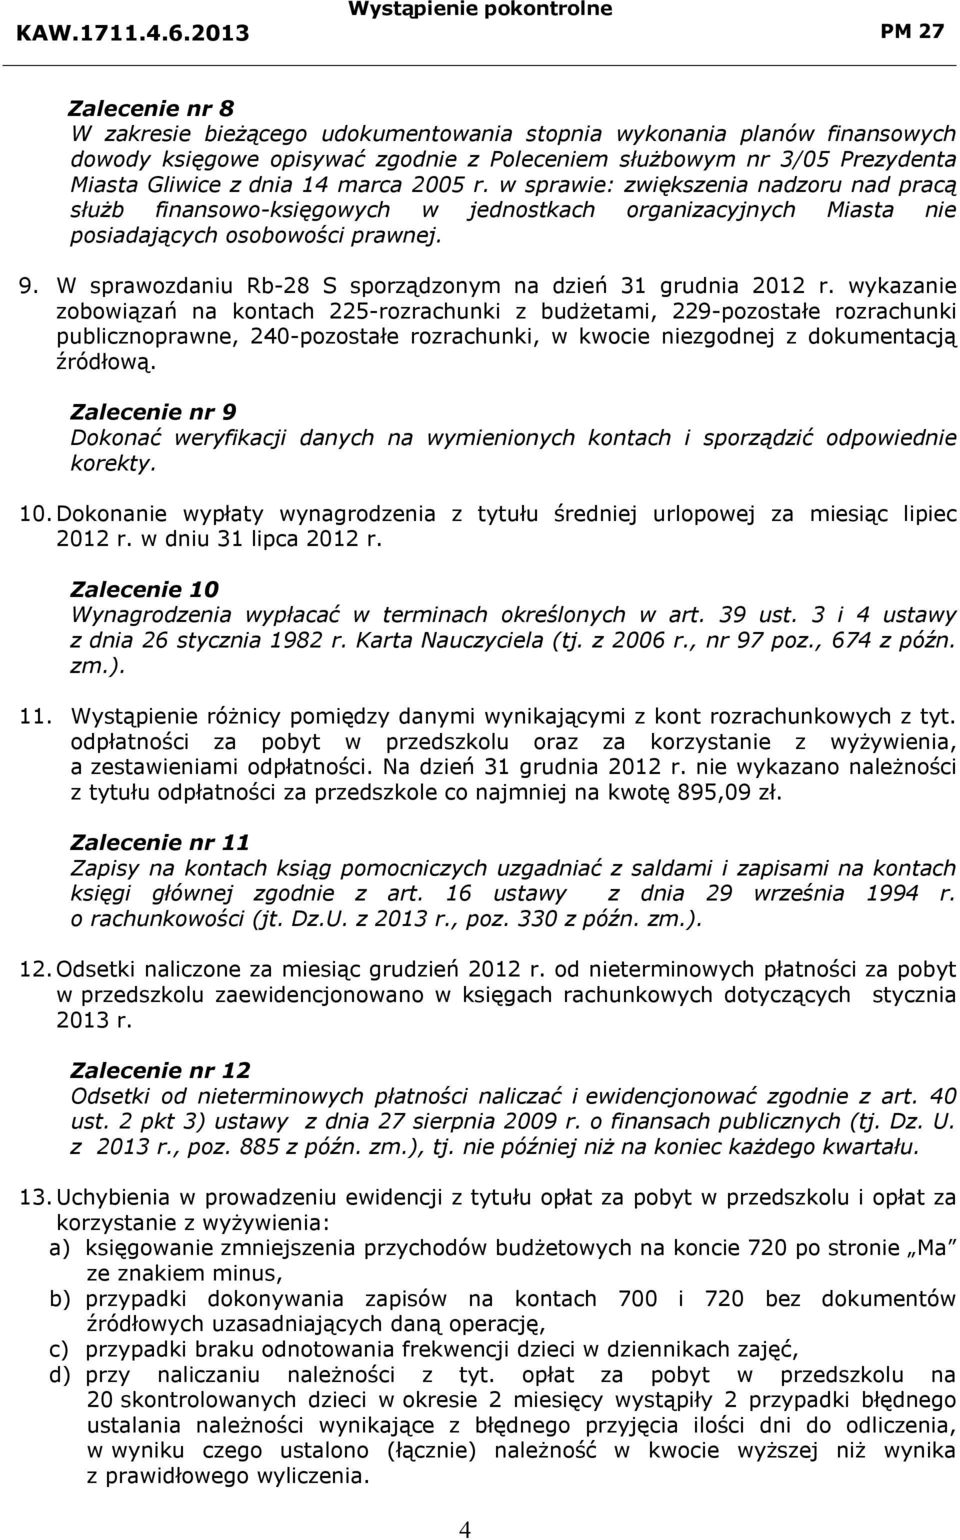 W sprawozdaniu Rb-28 S sporządzonym na dzień 31 grudnia 2012 r.